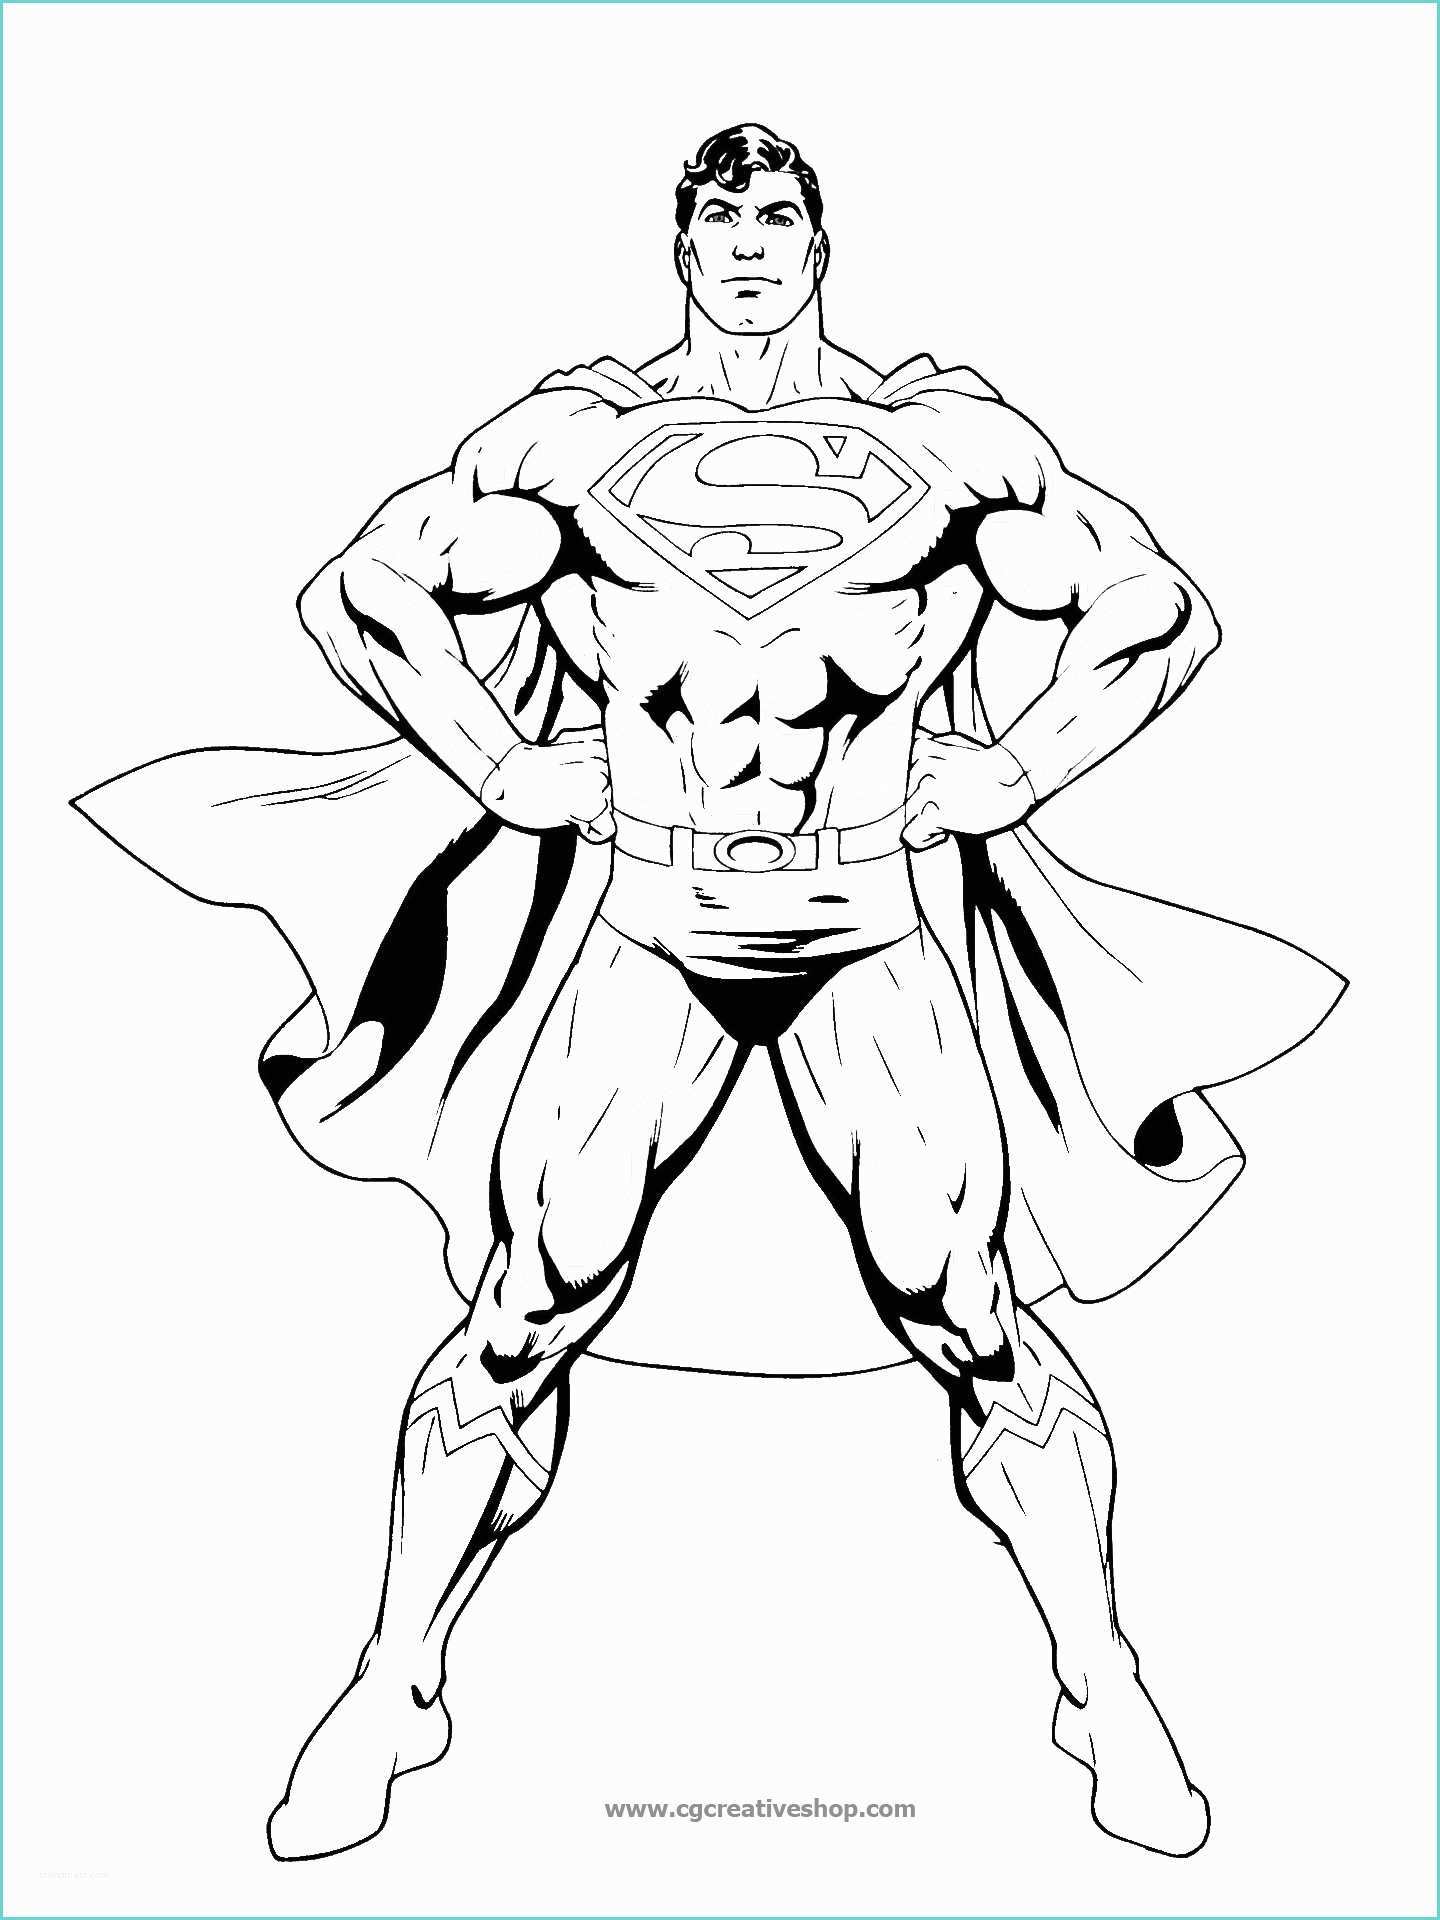 Batman Immagini Da Colorare Superman Disegno Da Colorare